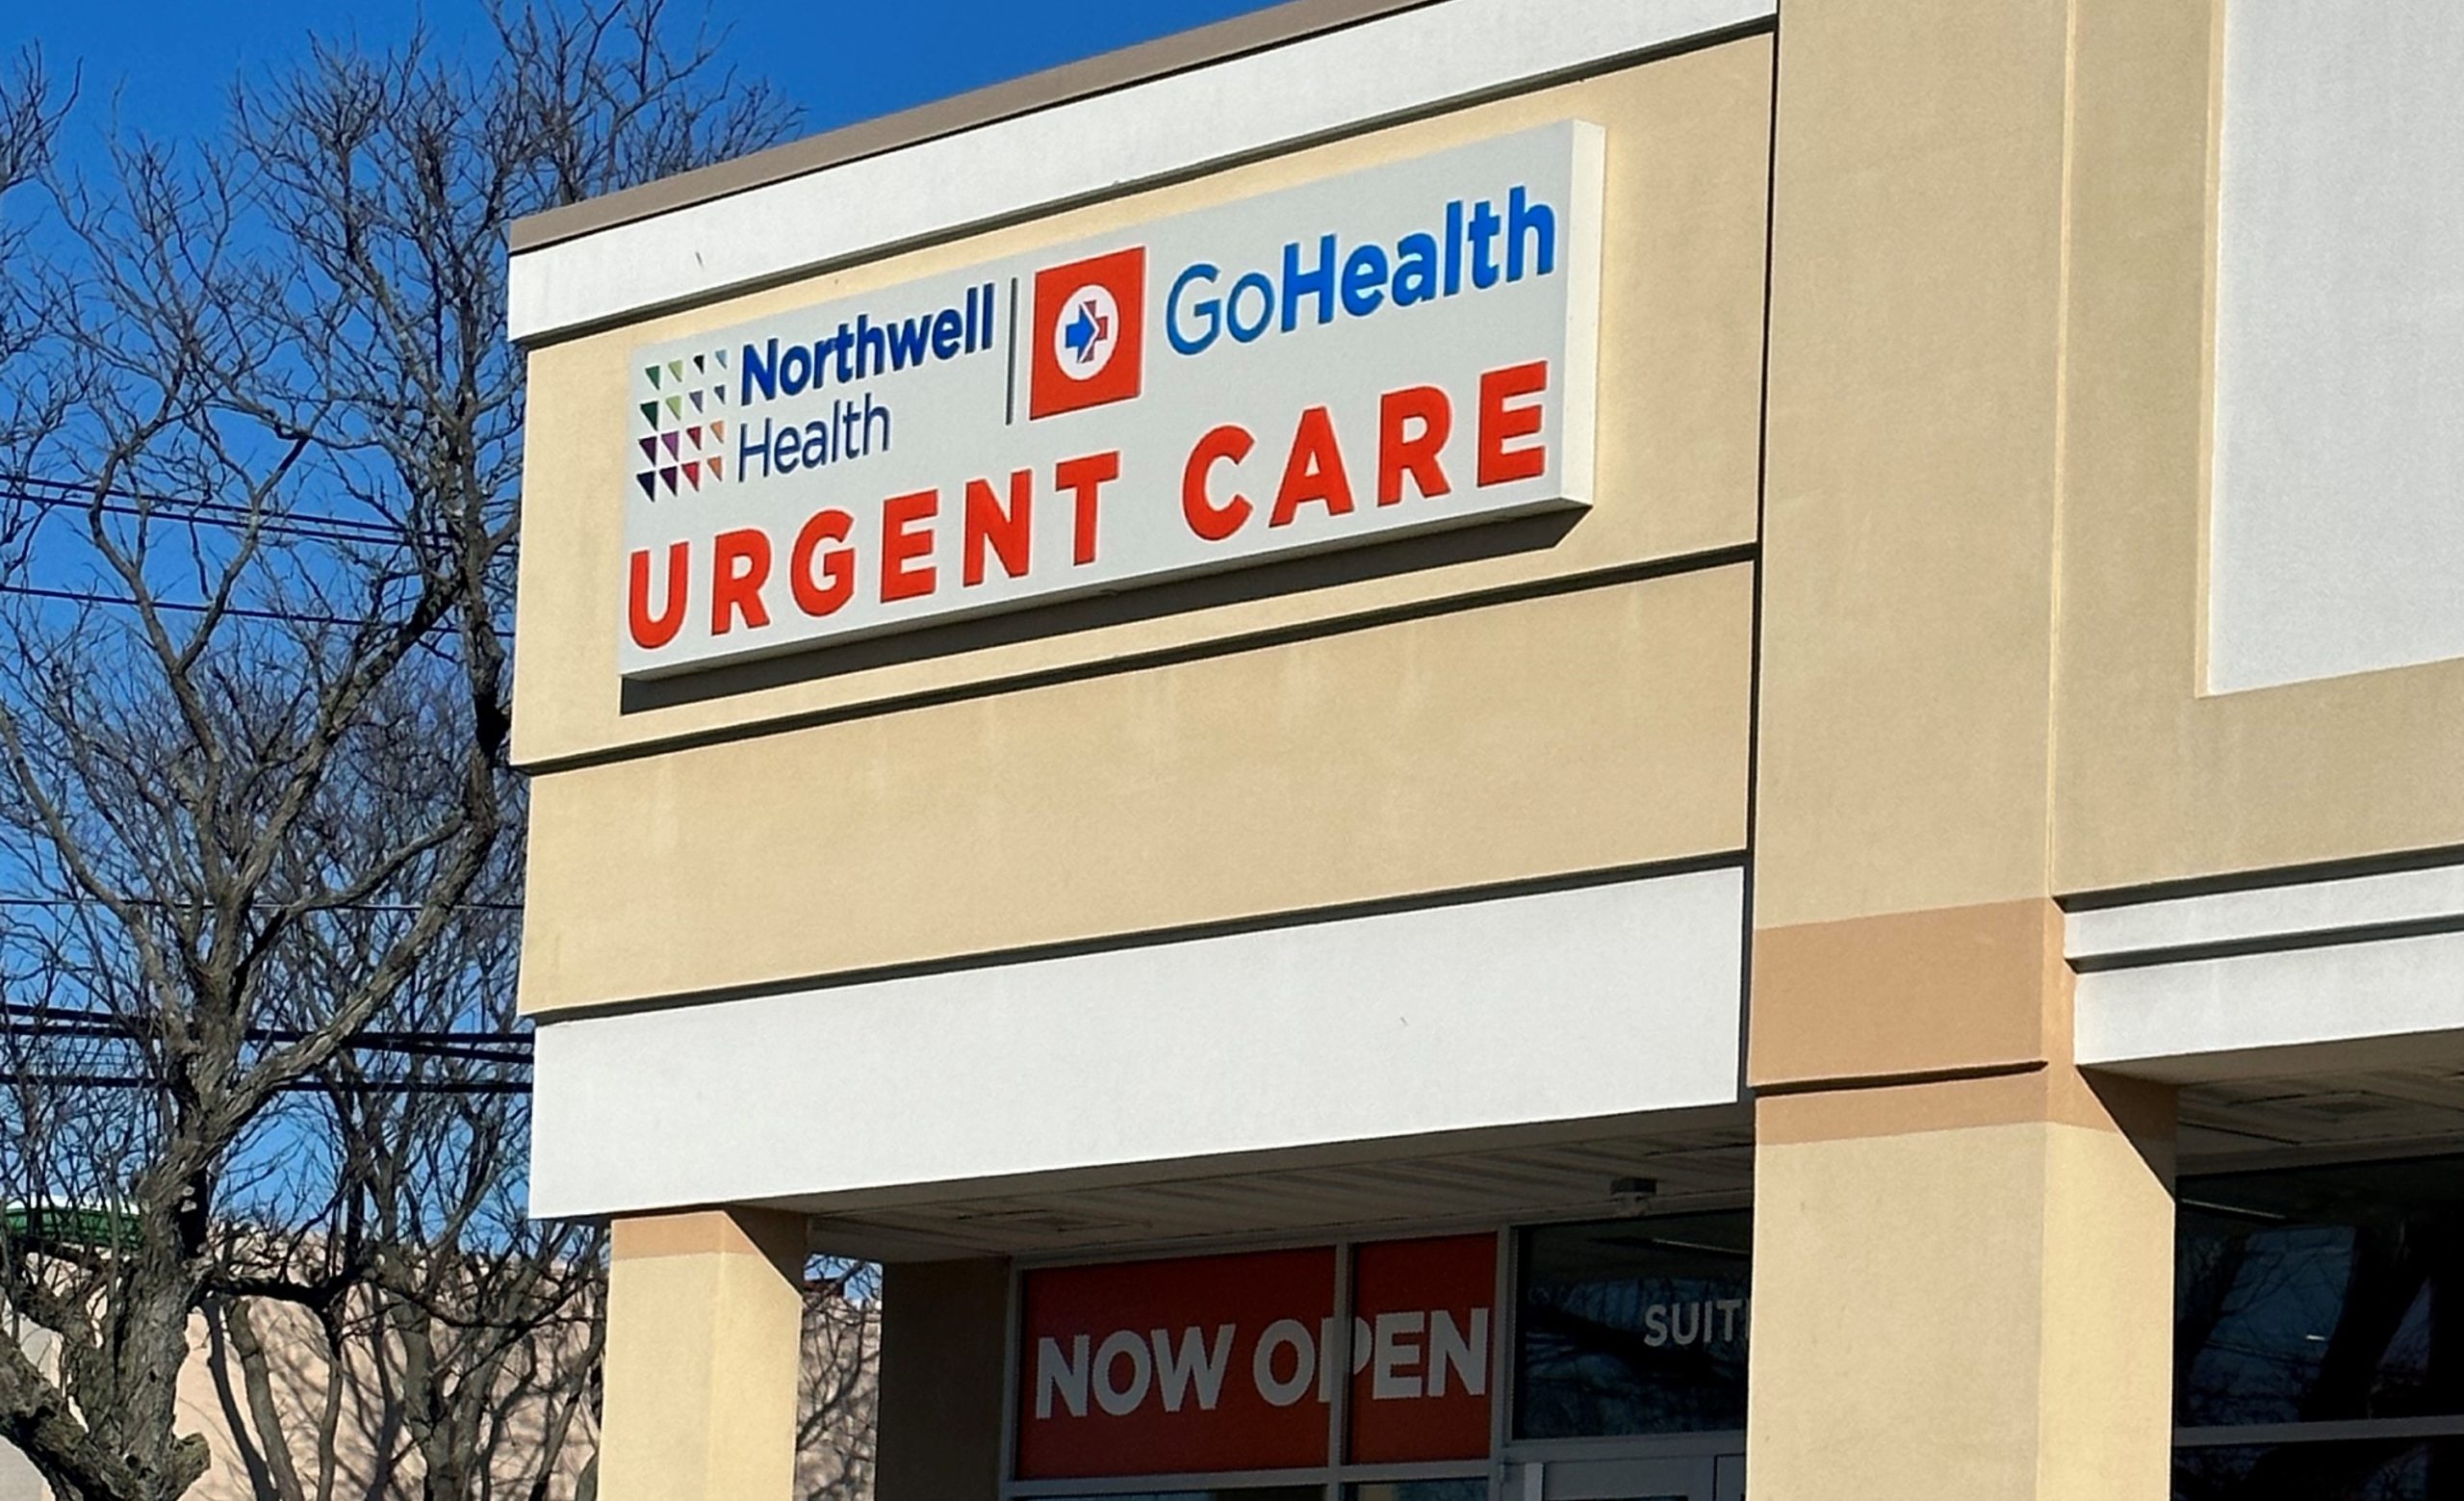 In Lindenhurst, a new urgent care center